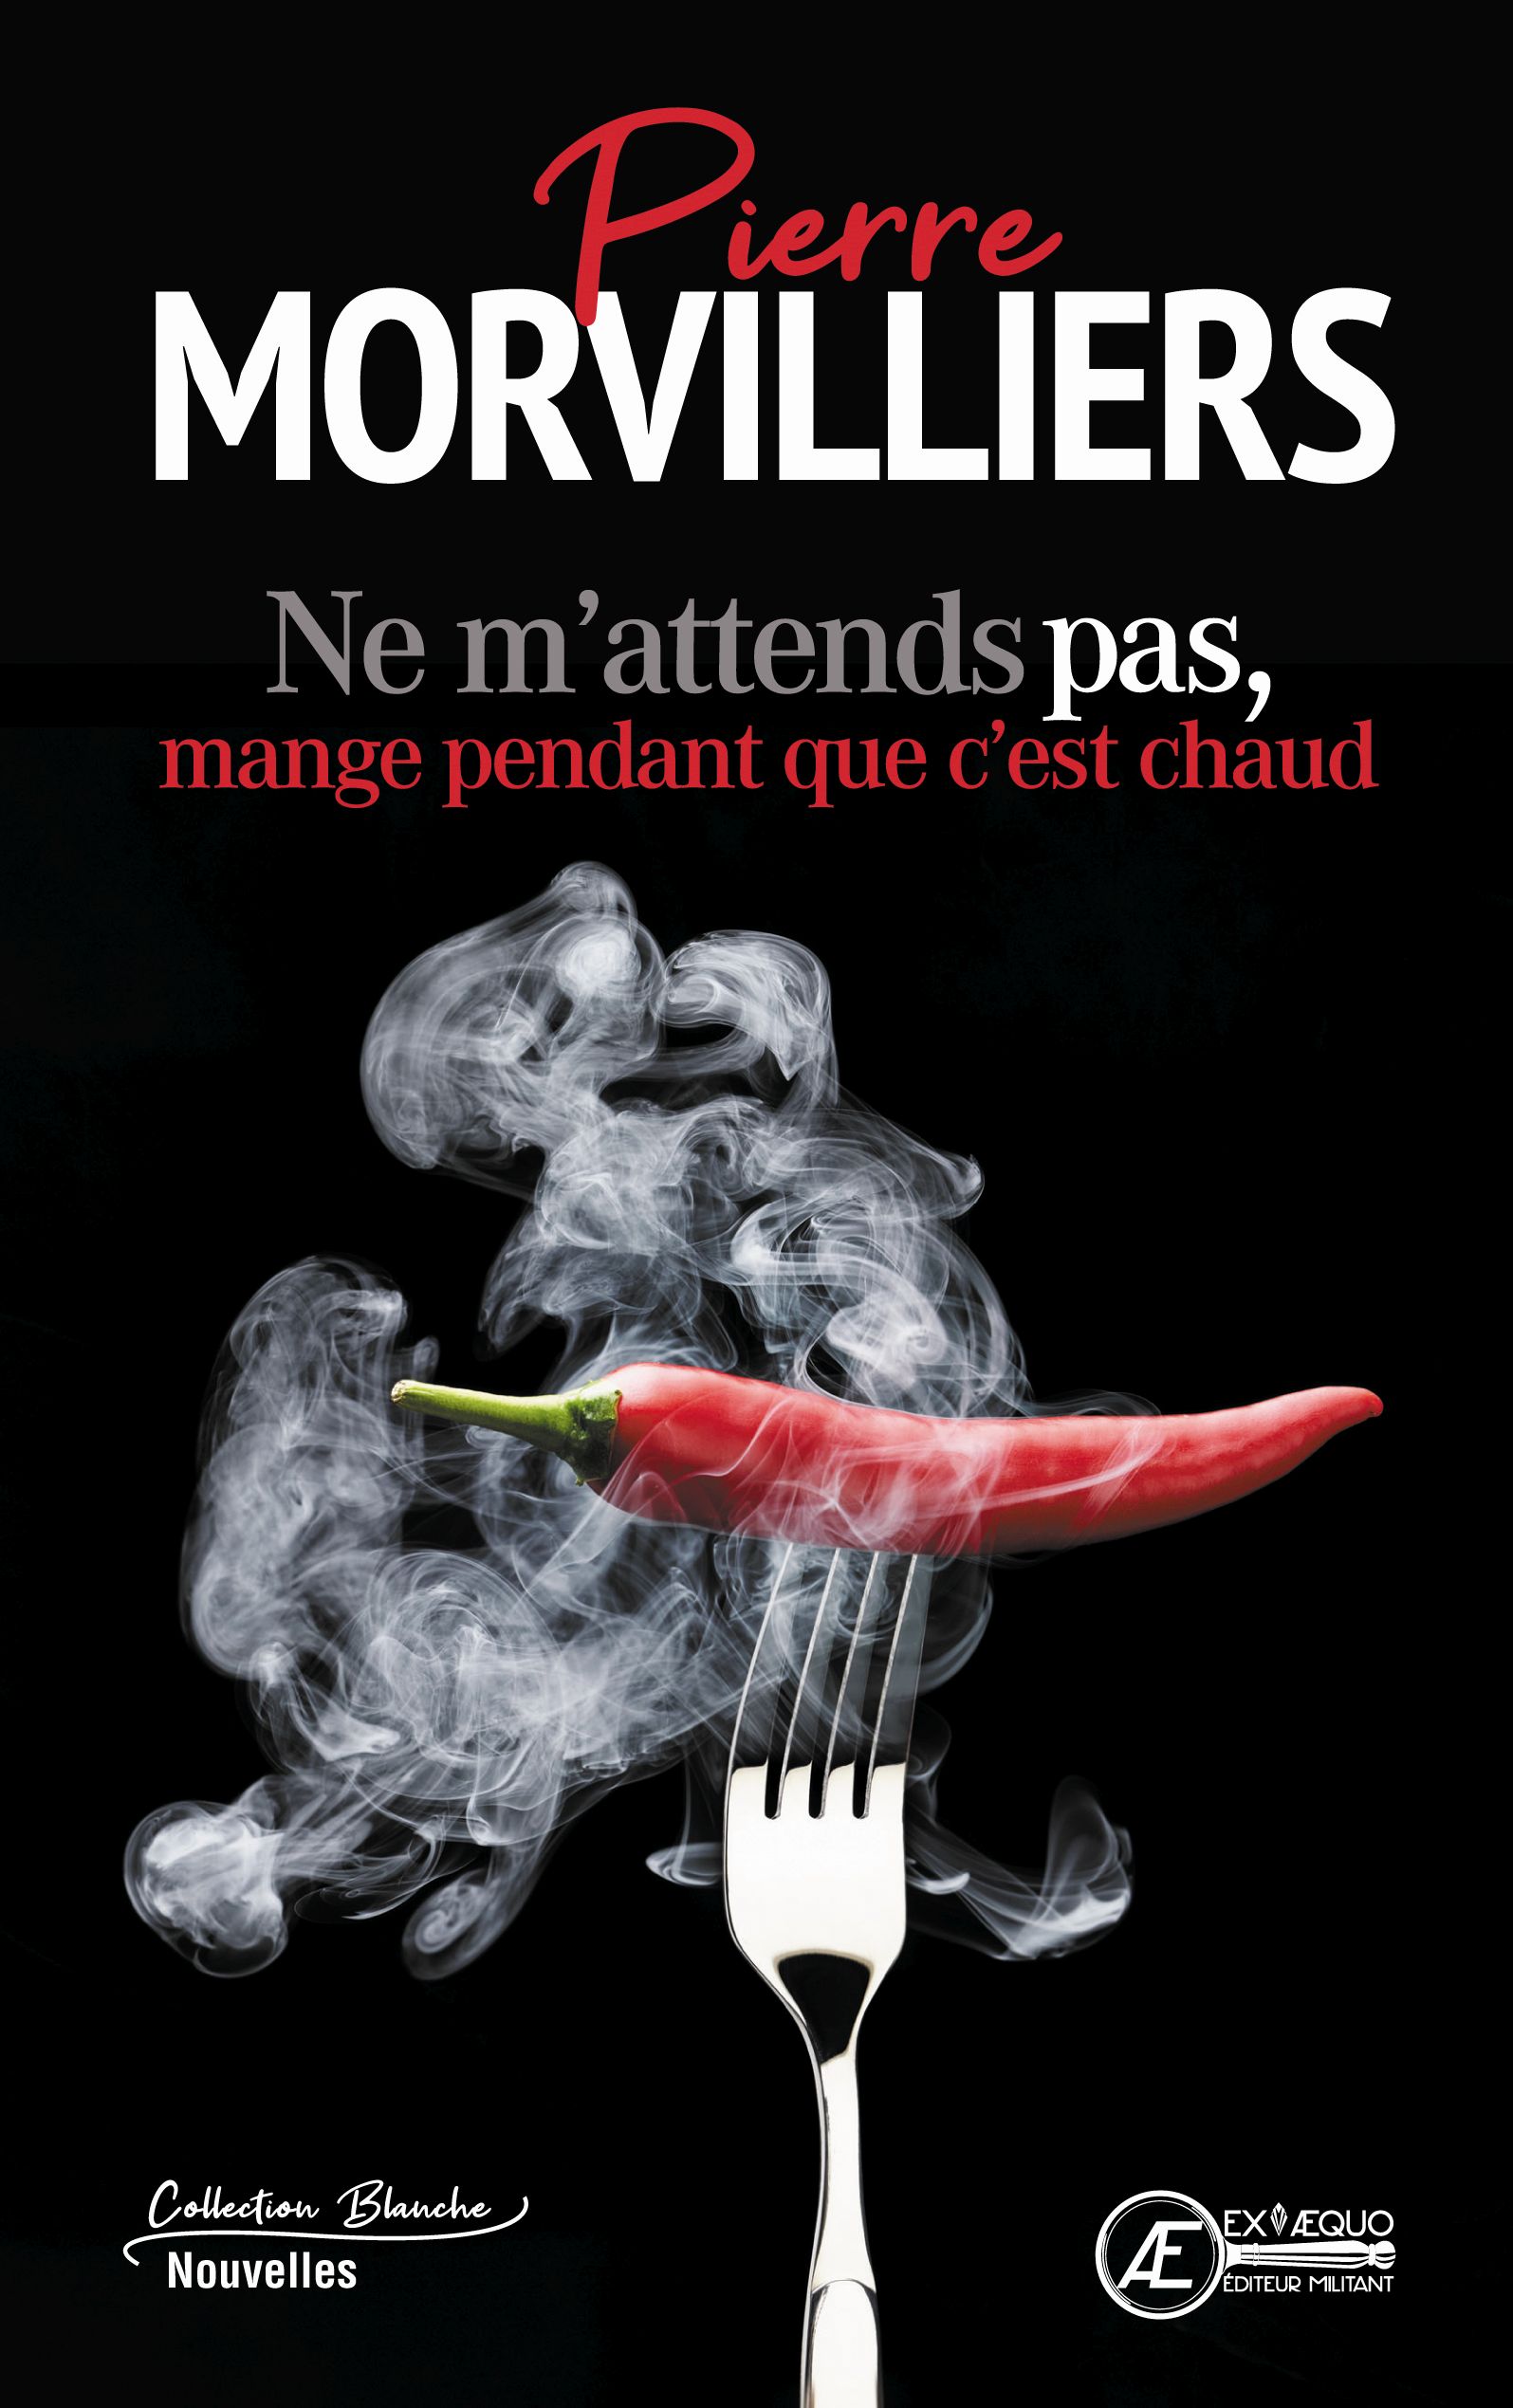 You are currently viewing Ne m’attends pas, mange pendant que c’est chaud, de Pierre Morvilliers